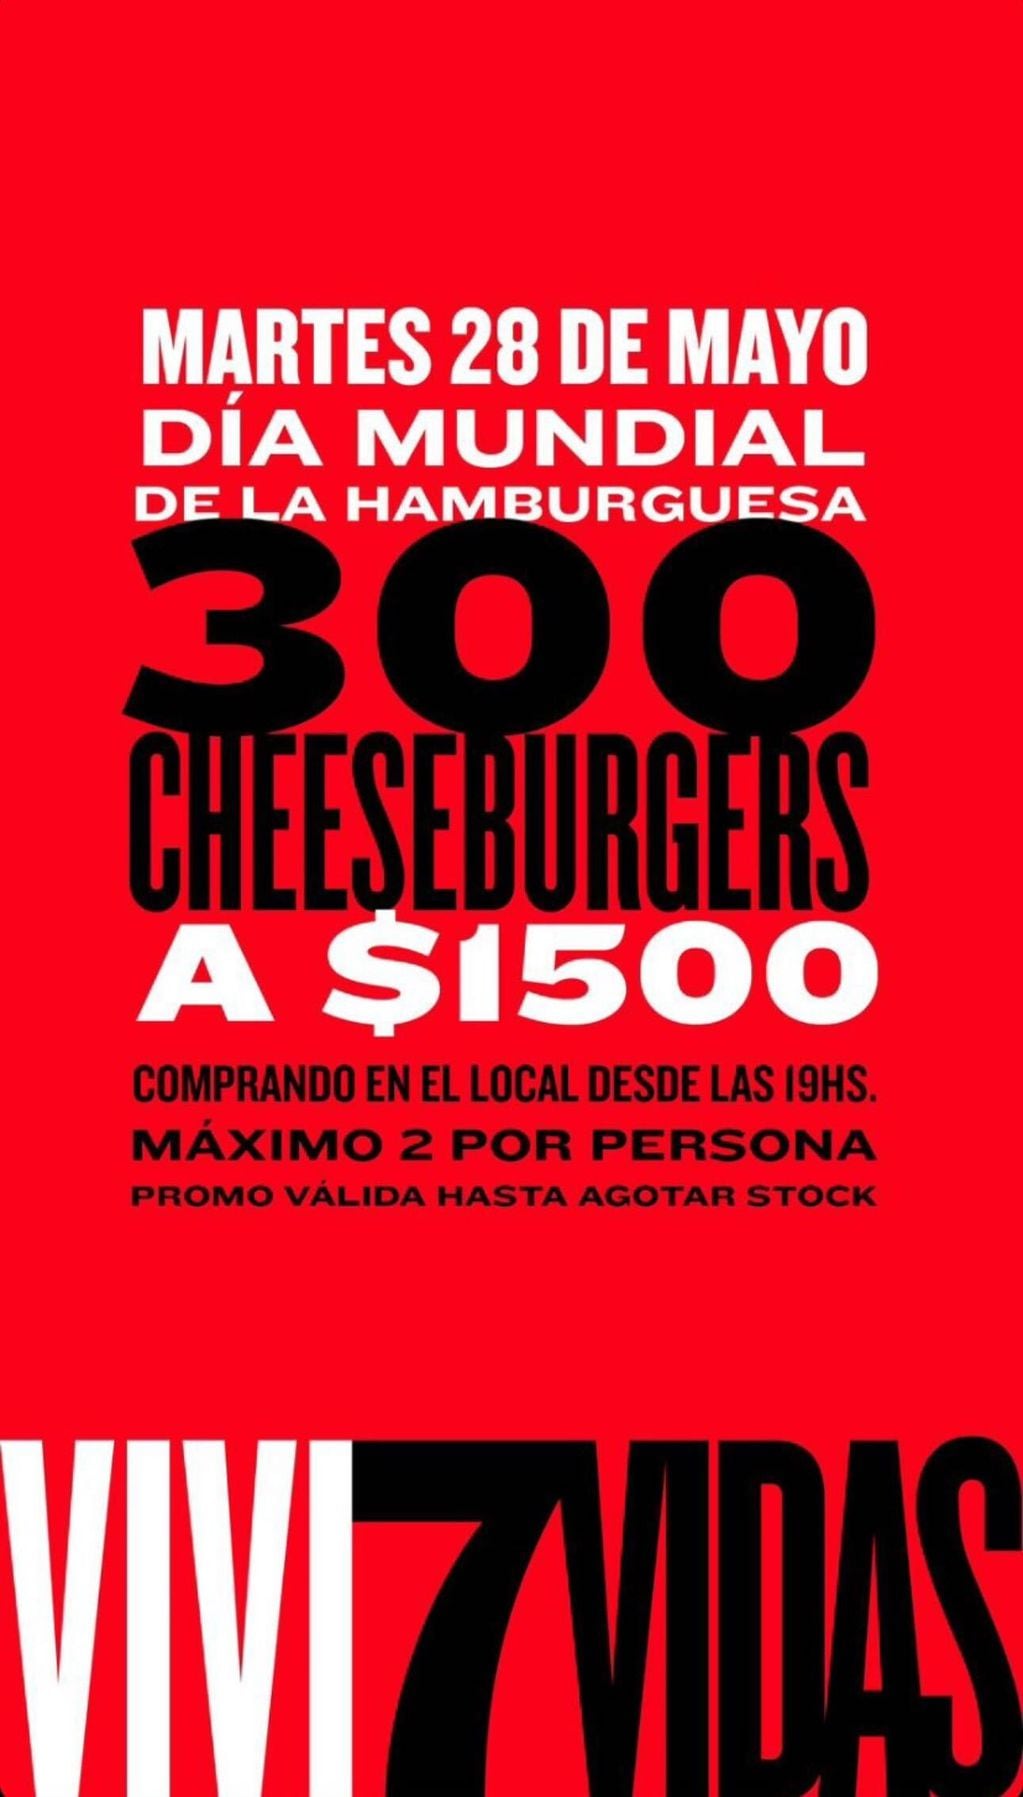 El bar 7 Vidas ofrece 300 hamburguesas a $1500.